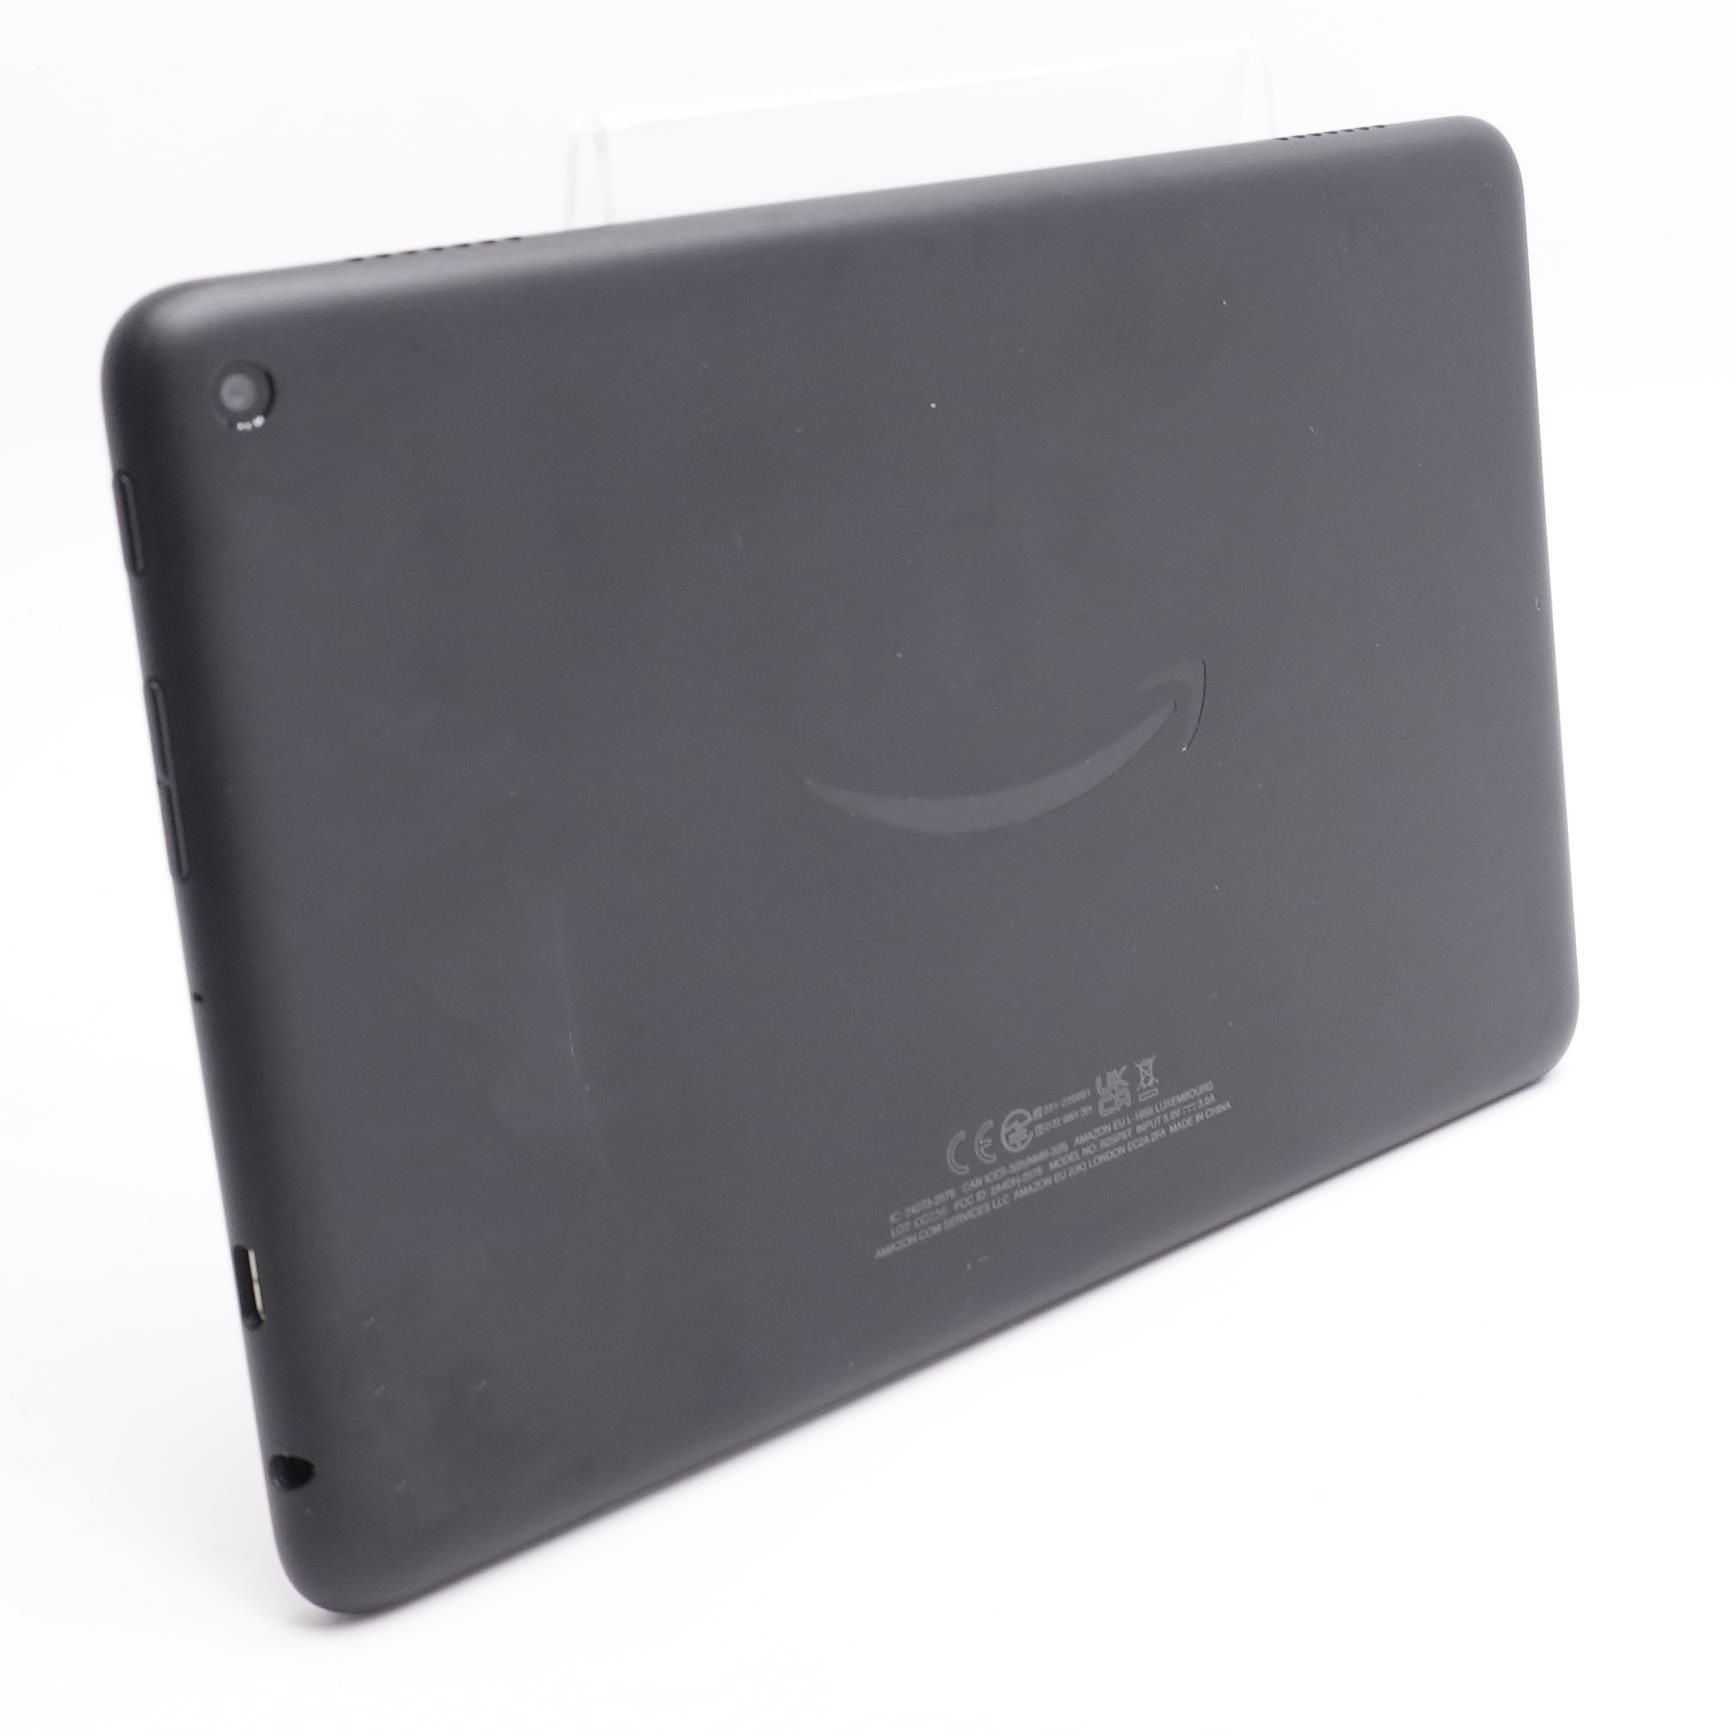 Fire HD 8 Tablet - 32GB (10th Gen) - Black at